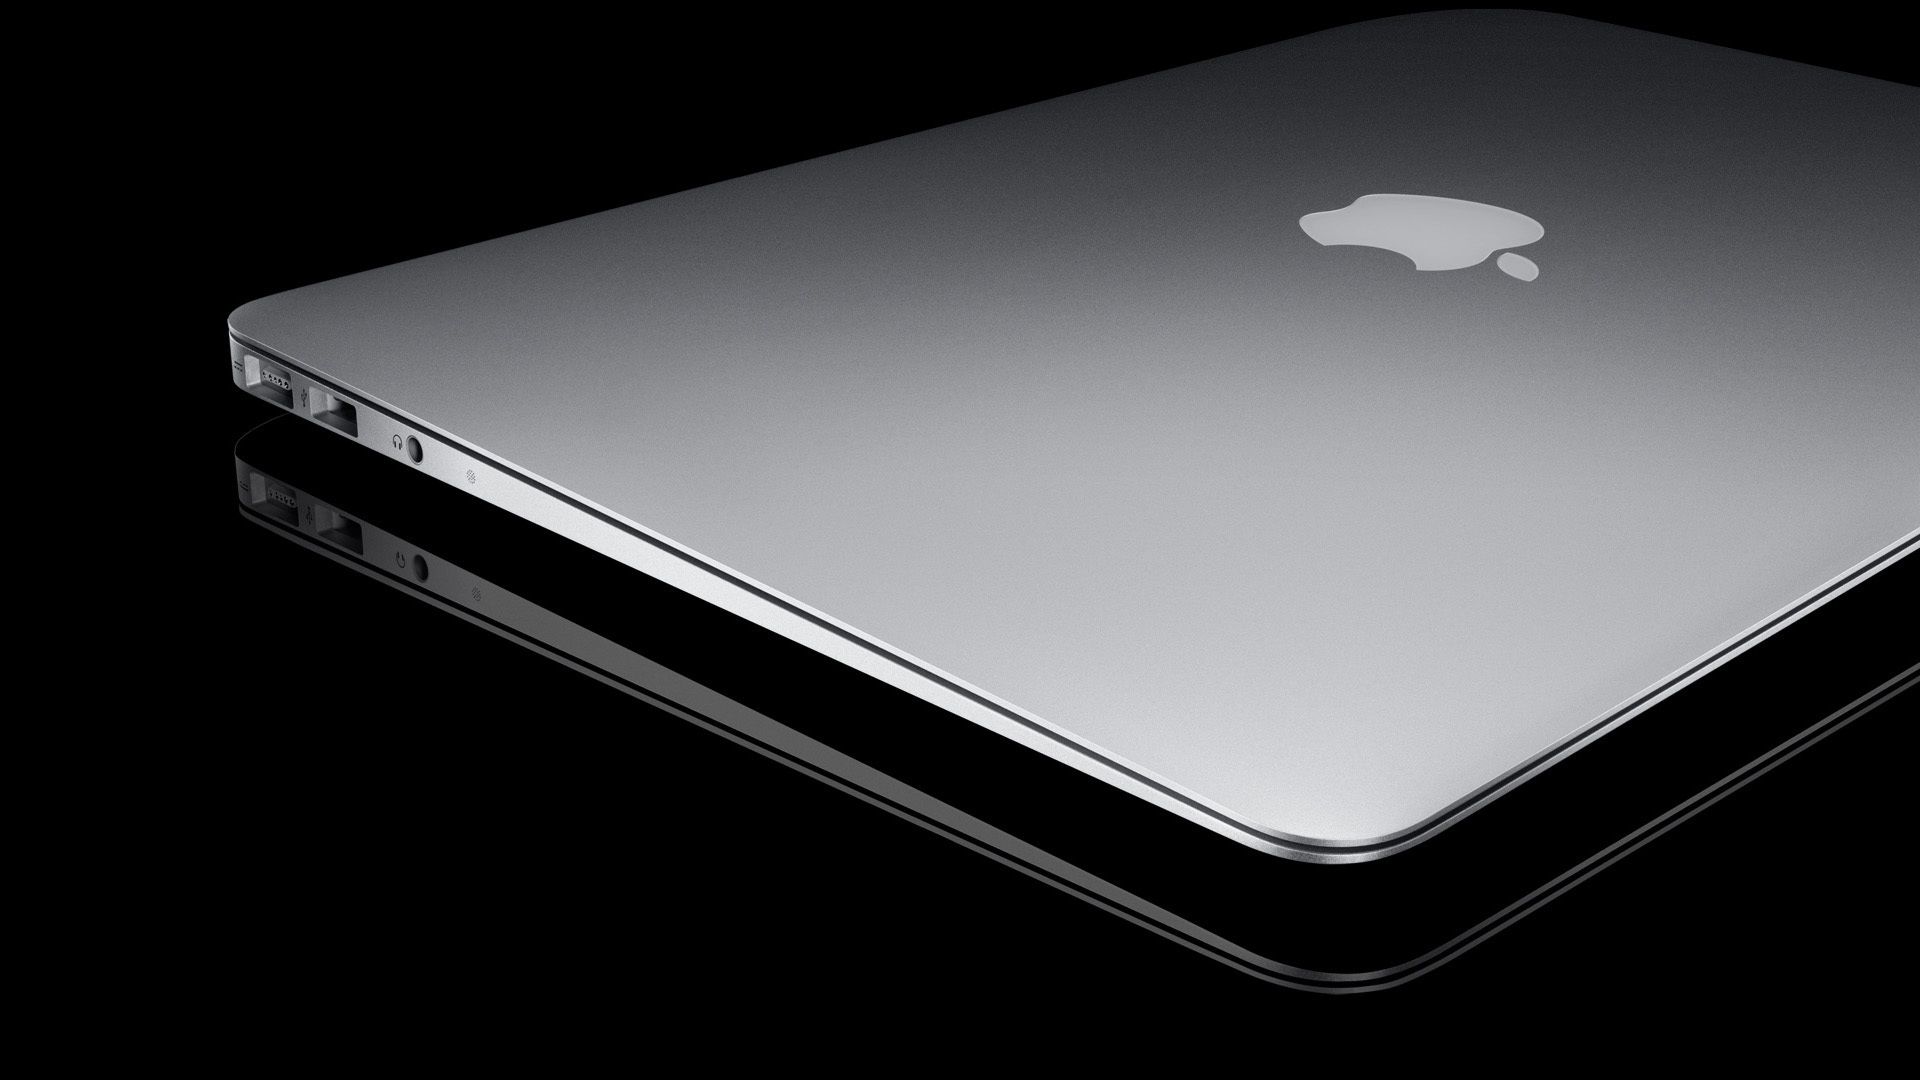 Apple macbook air desktop wallpaper | danasrgg.top